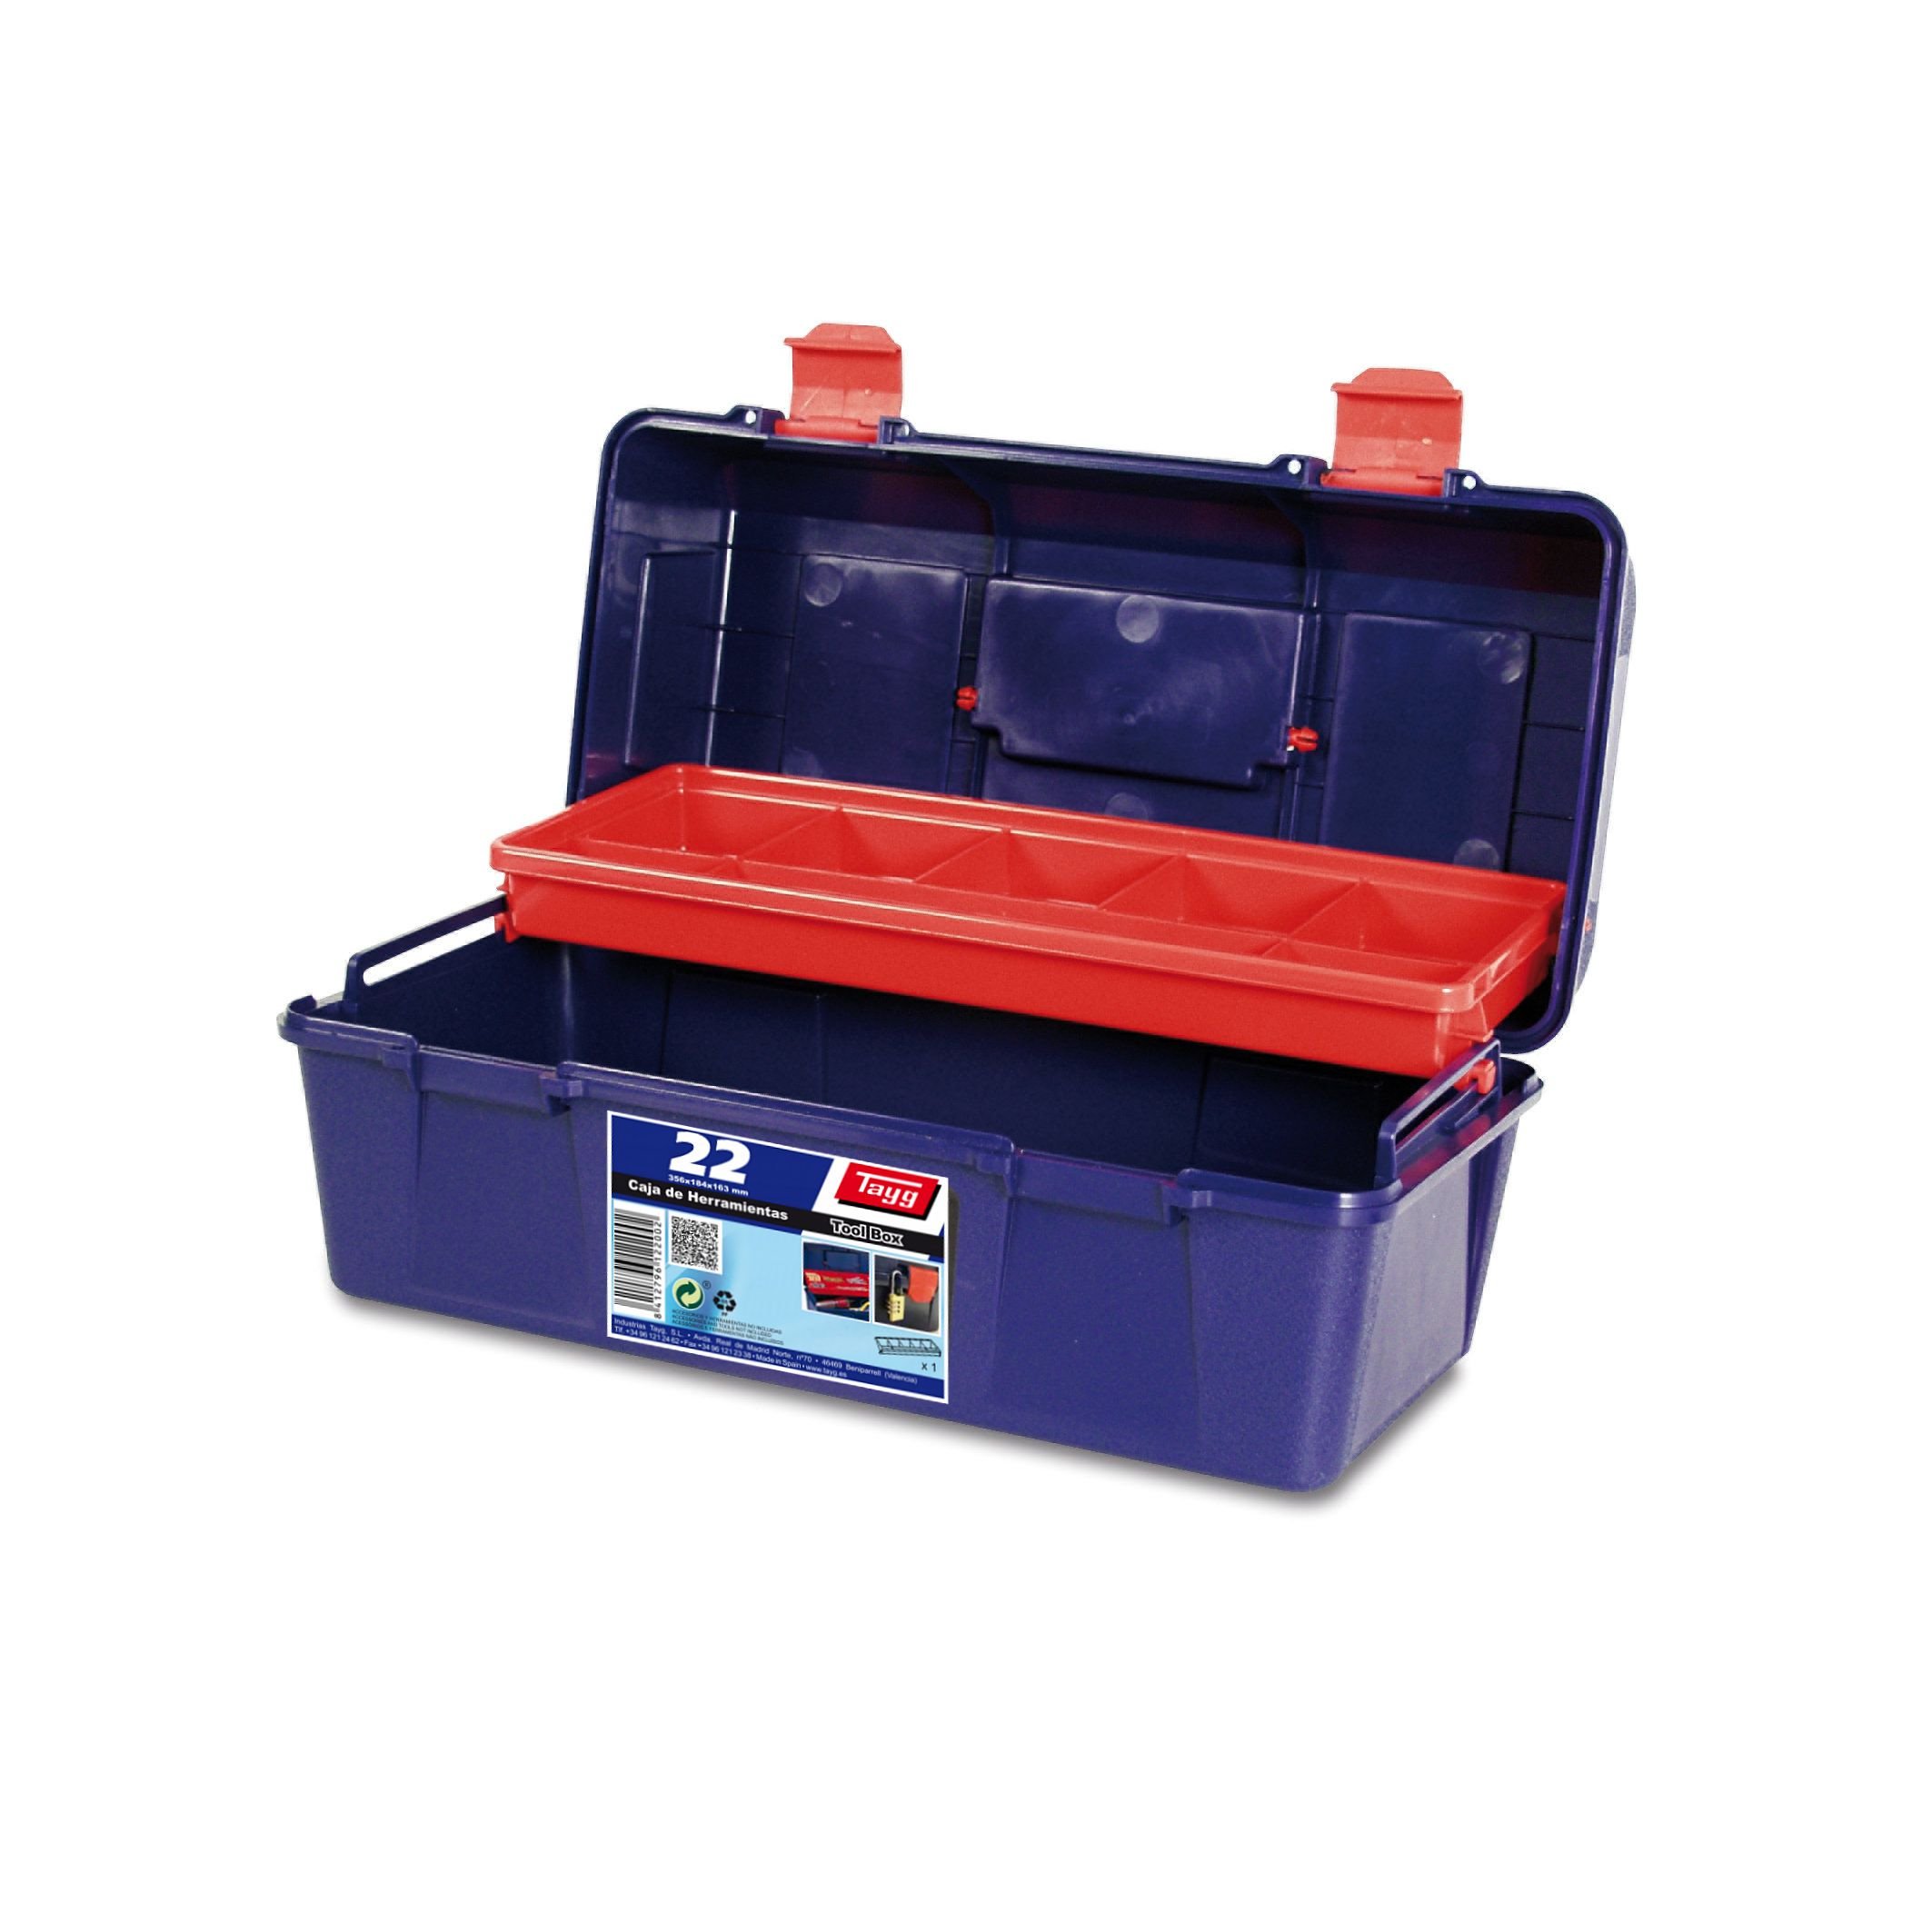 Ящик пластиковий для інструментів Tayg Box 22 Caja htas, 35,6х18,4х16,3 см, синій (122002) - фото 1